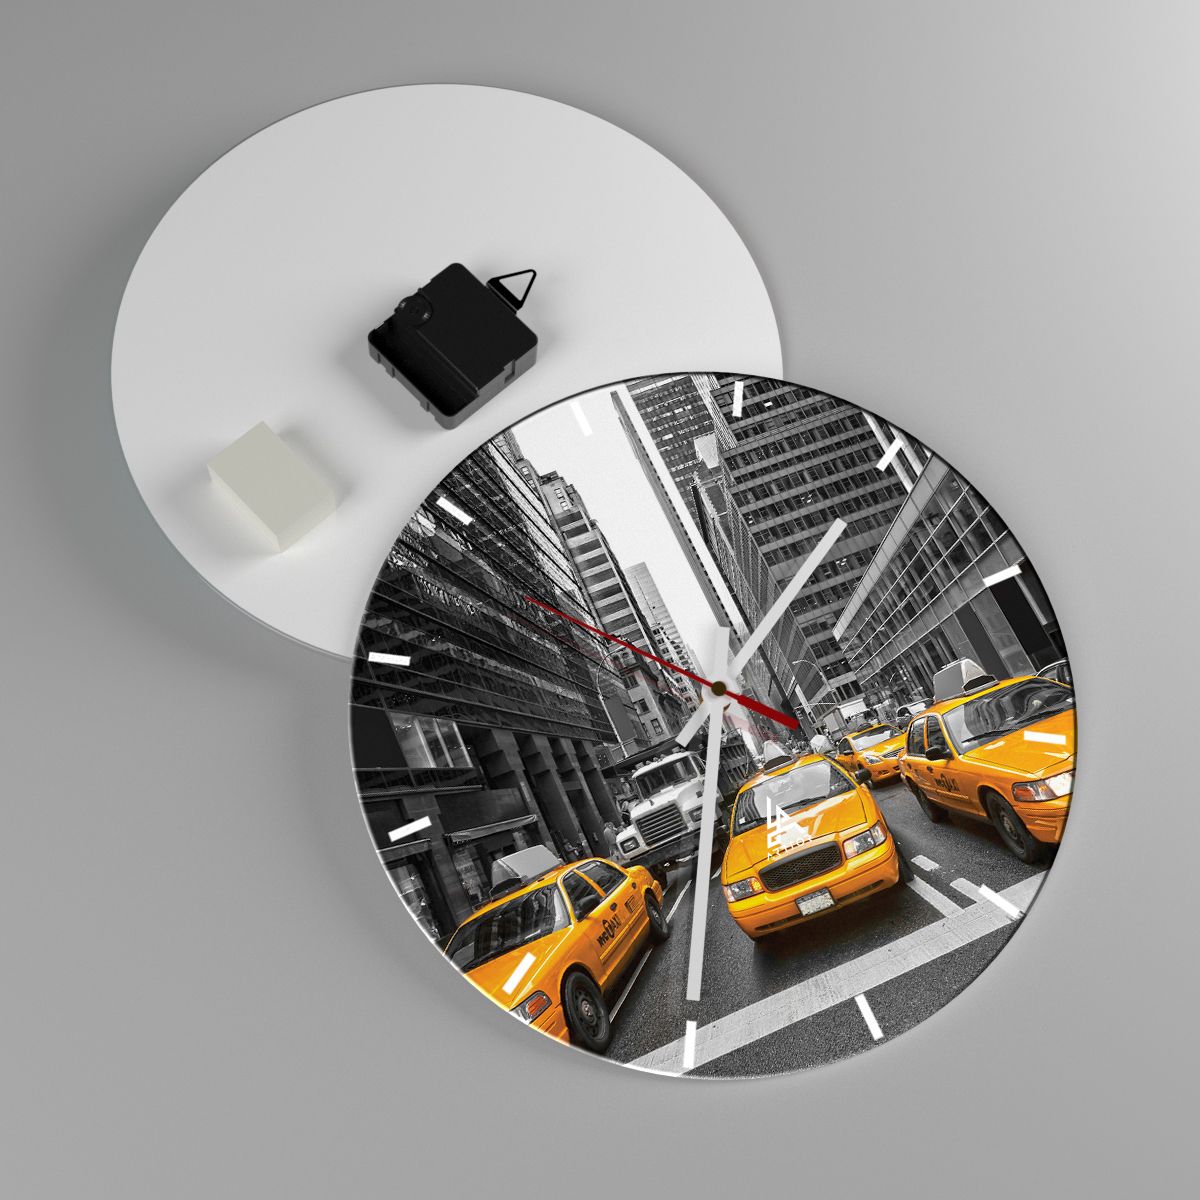 Nástěnné hodiny Město, Nástěnné hodiny New York, Nástěnné hodiny Architektura, Nástěnné hodiny Taxi, Nástěnné hodiny Manhattan